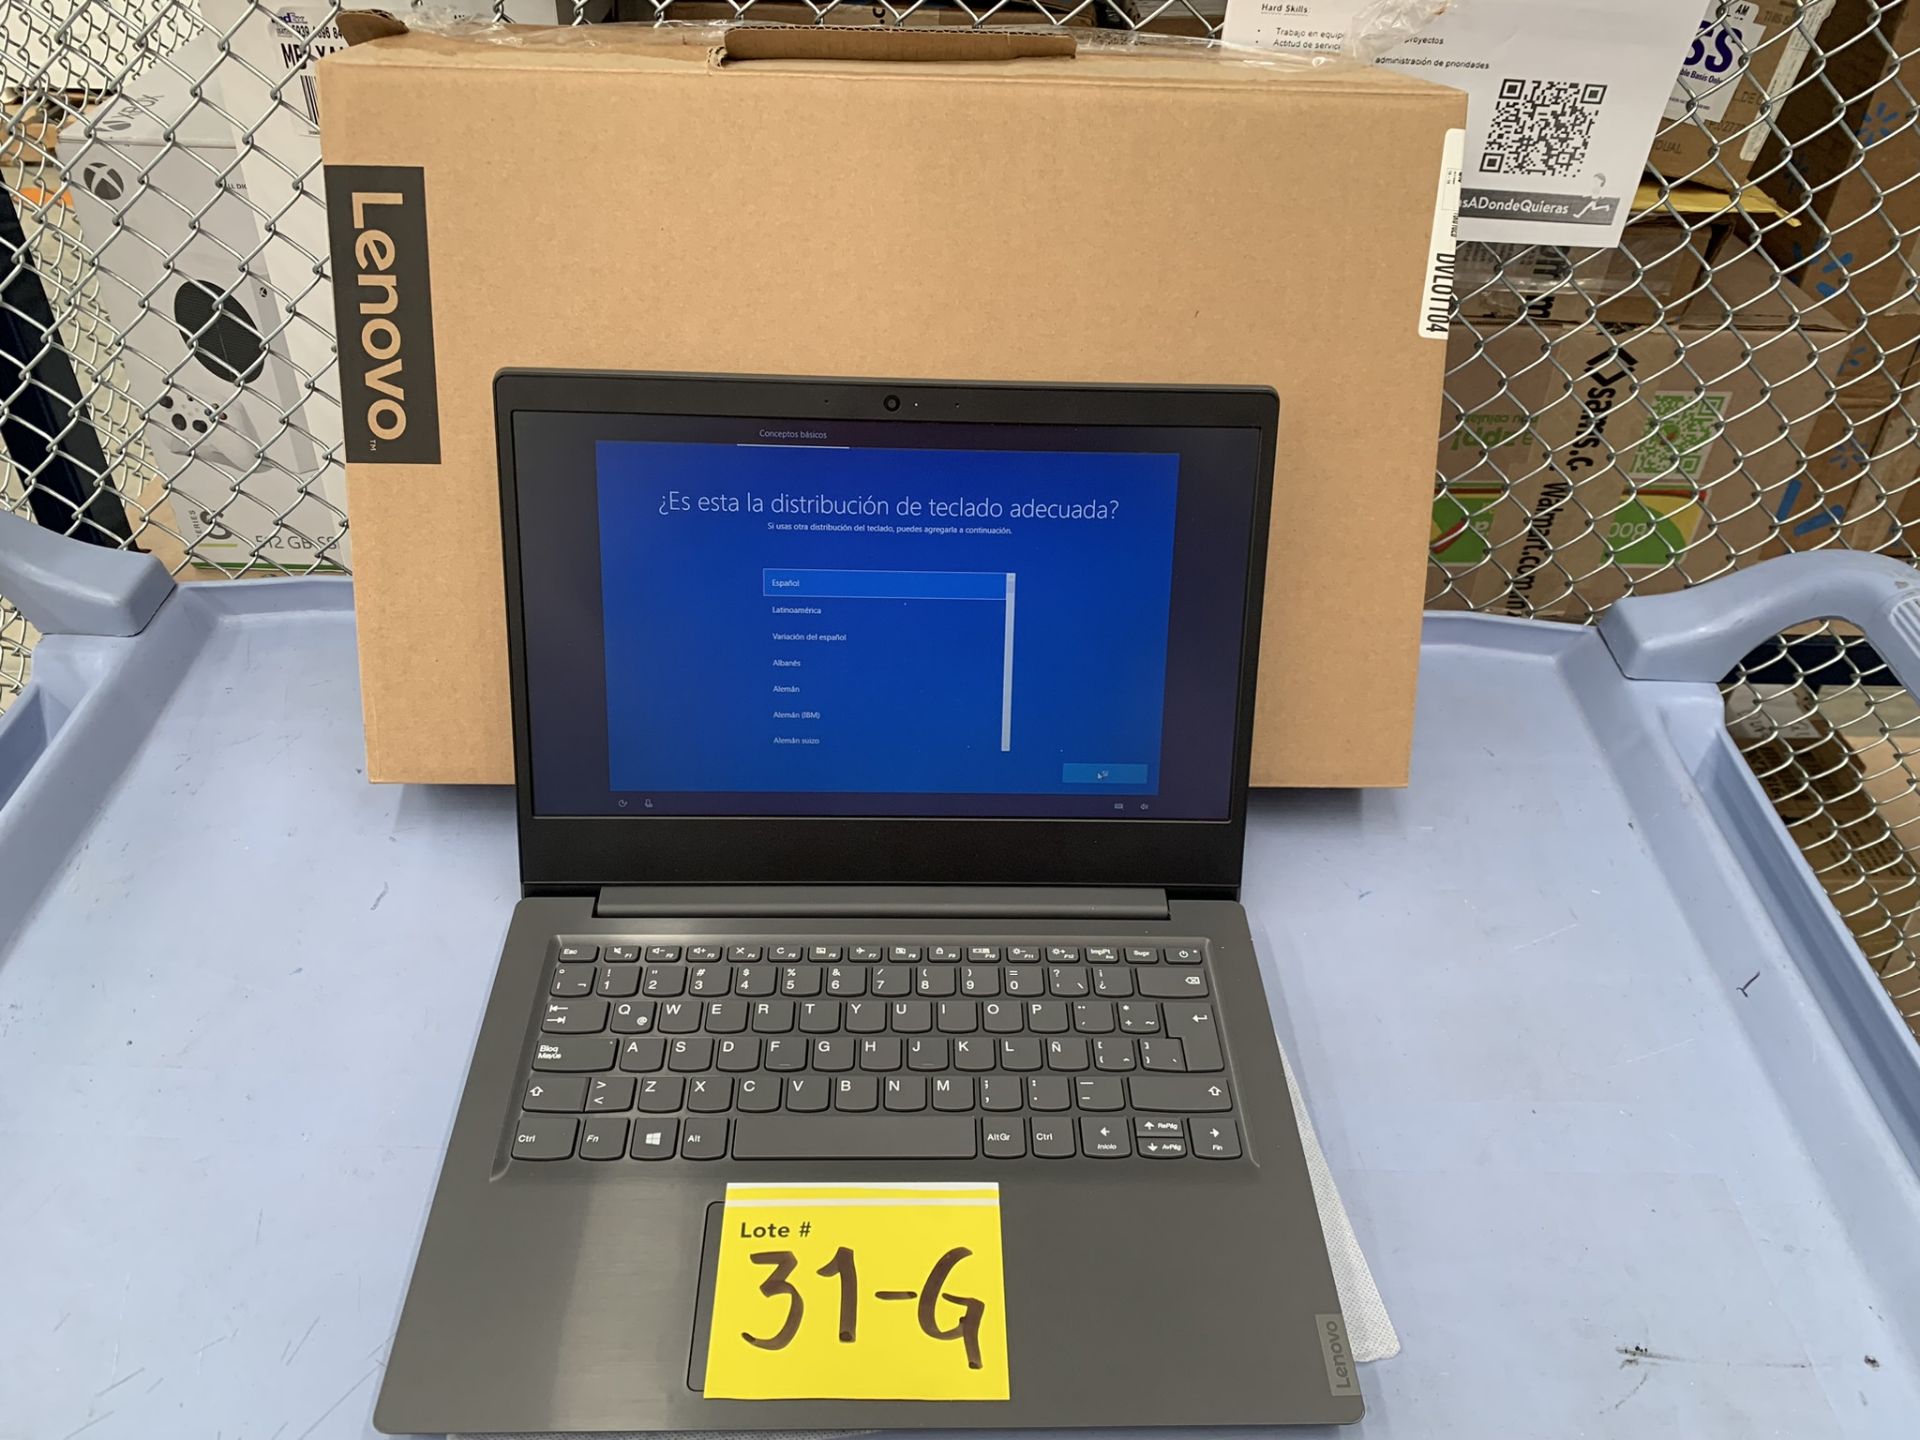 Lote De 2 Laptops Contiene: 1 Laptop Marca Lenovo Modelo 82c6, Serie PF37C7ZK, Color Gris, Proc - Image 3 of 11